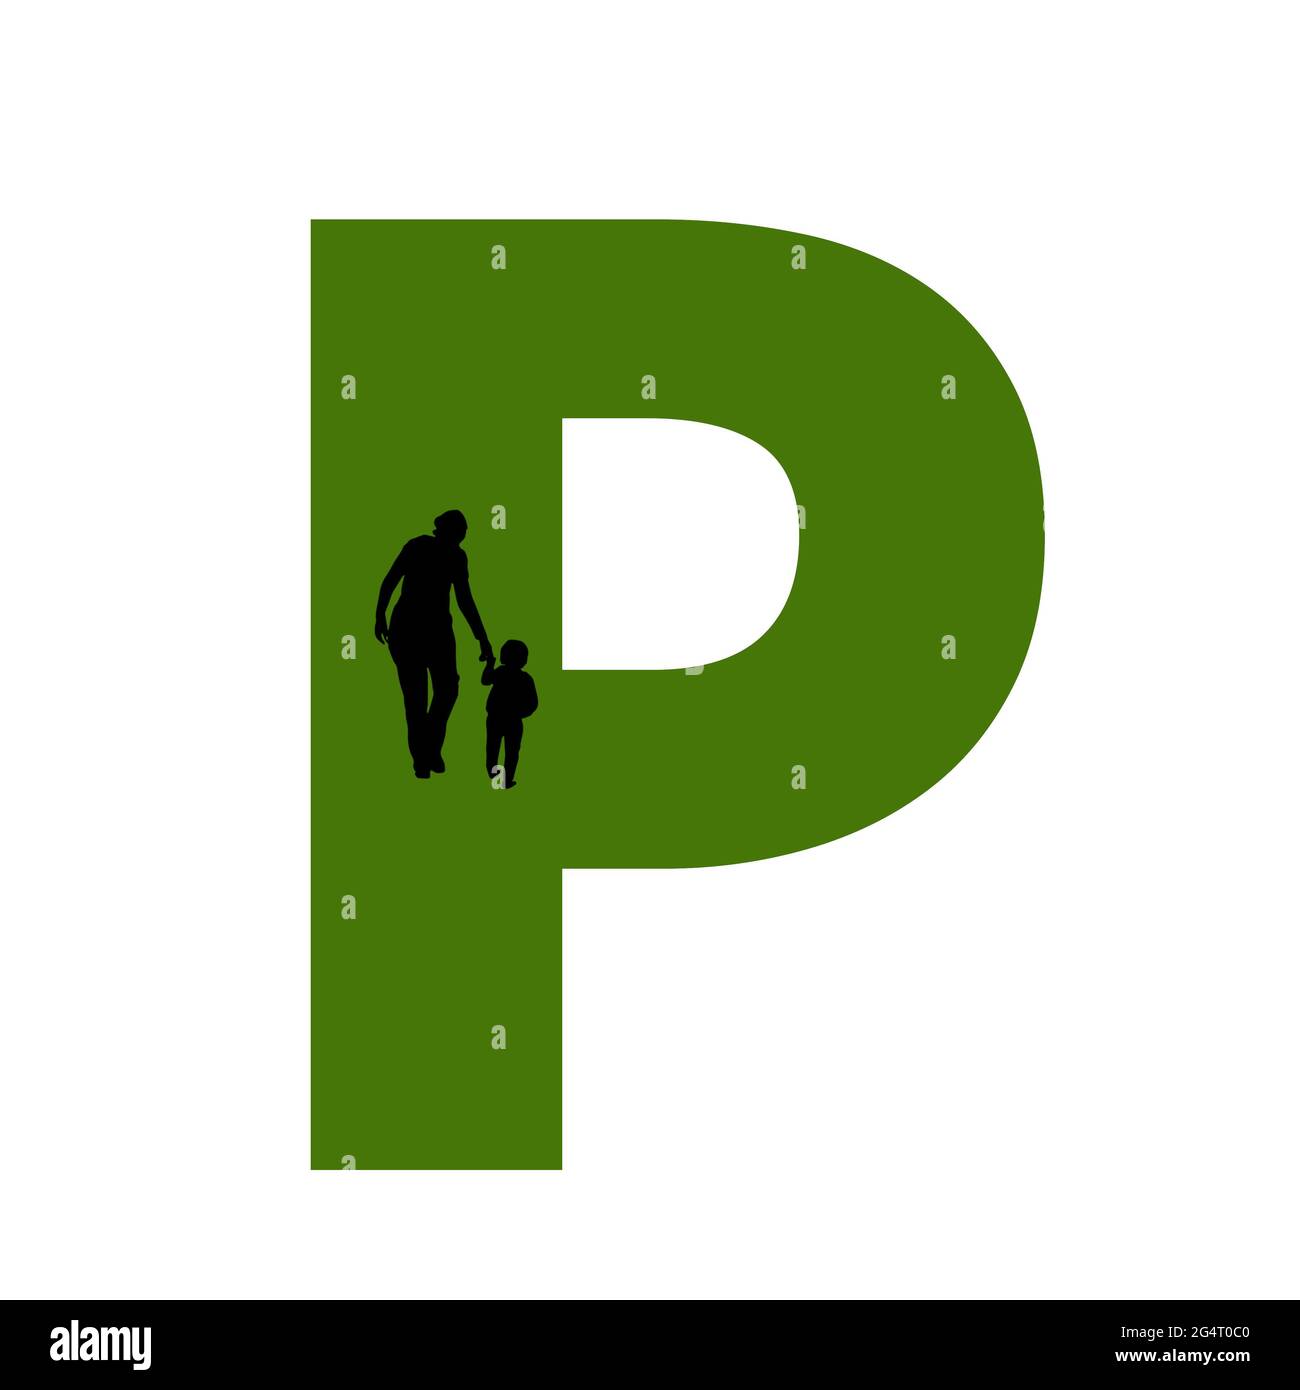 Lettre P de l'alphabet avec silhouette d'une mère et d'un enfant marchant, en vert et noir Banque D'Images